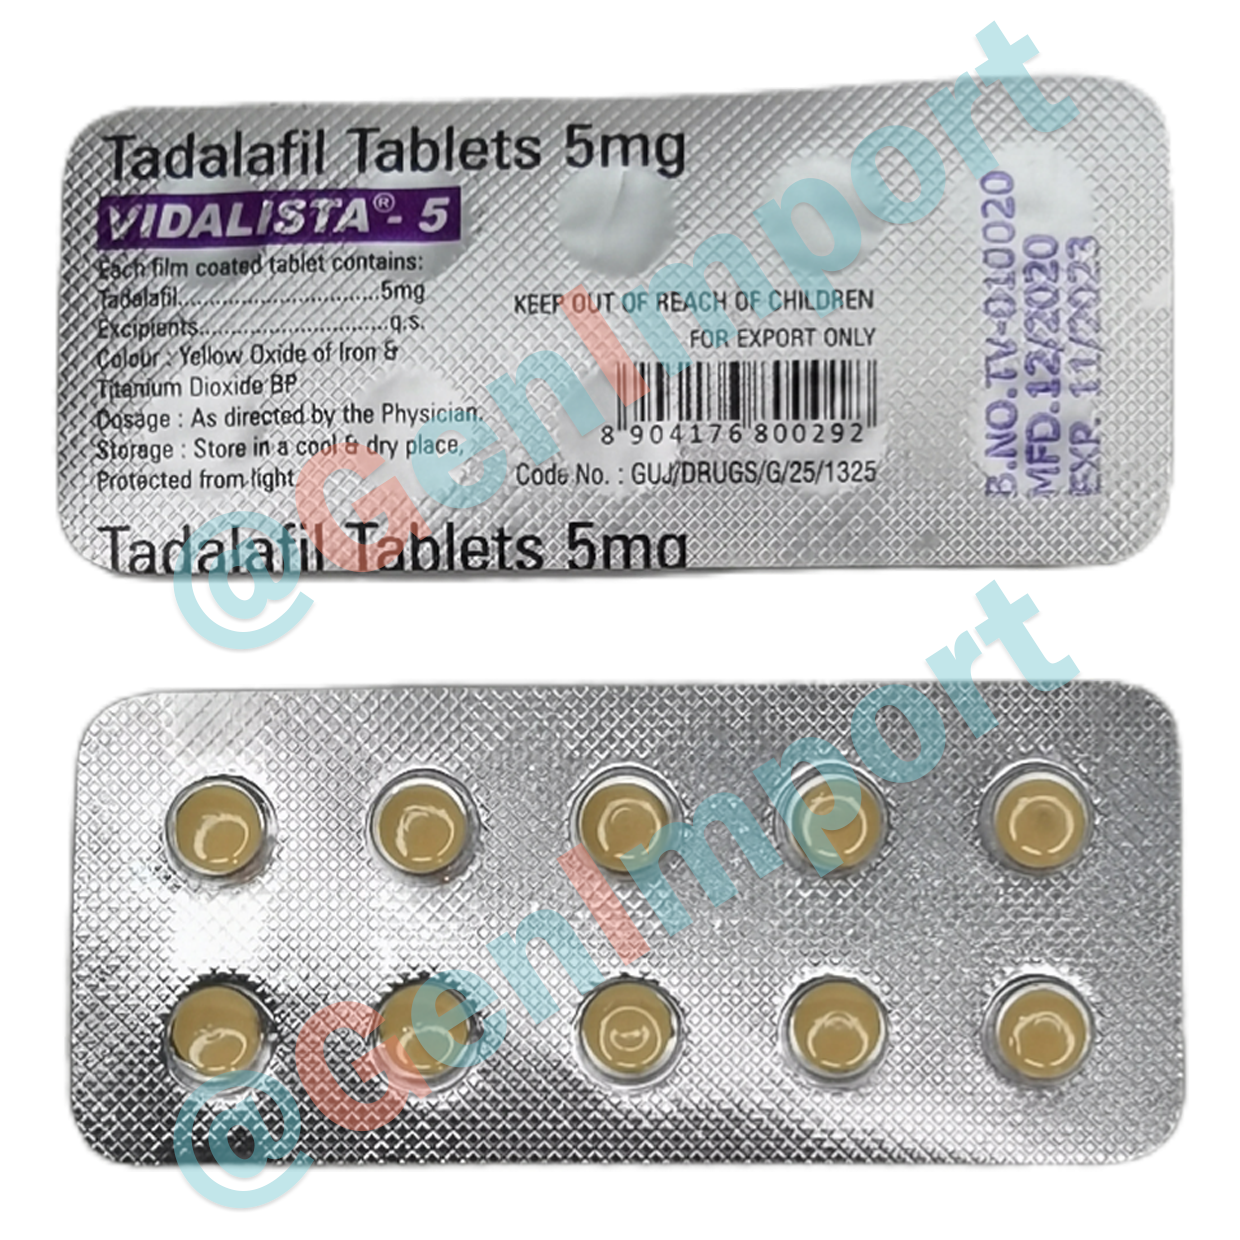 Vidalista Видалиста 5, аналог сиалиса (тадалафил, tadalafil)